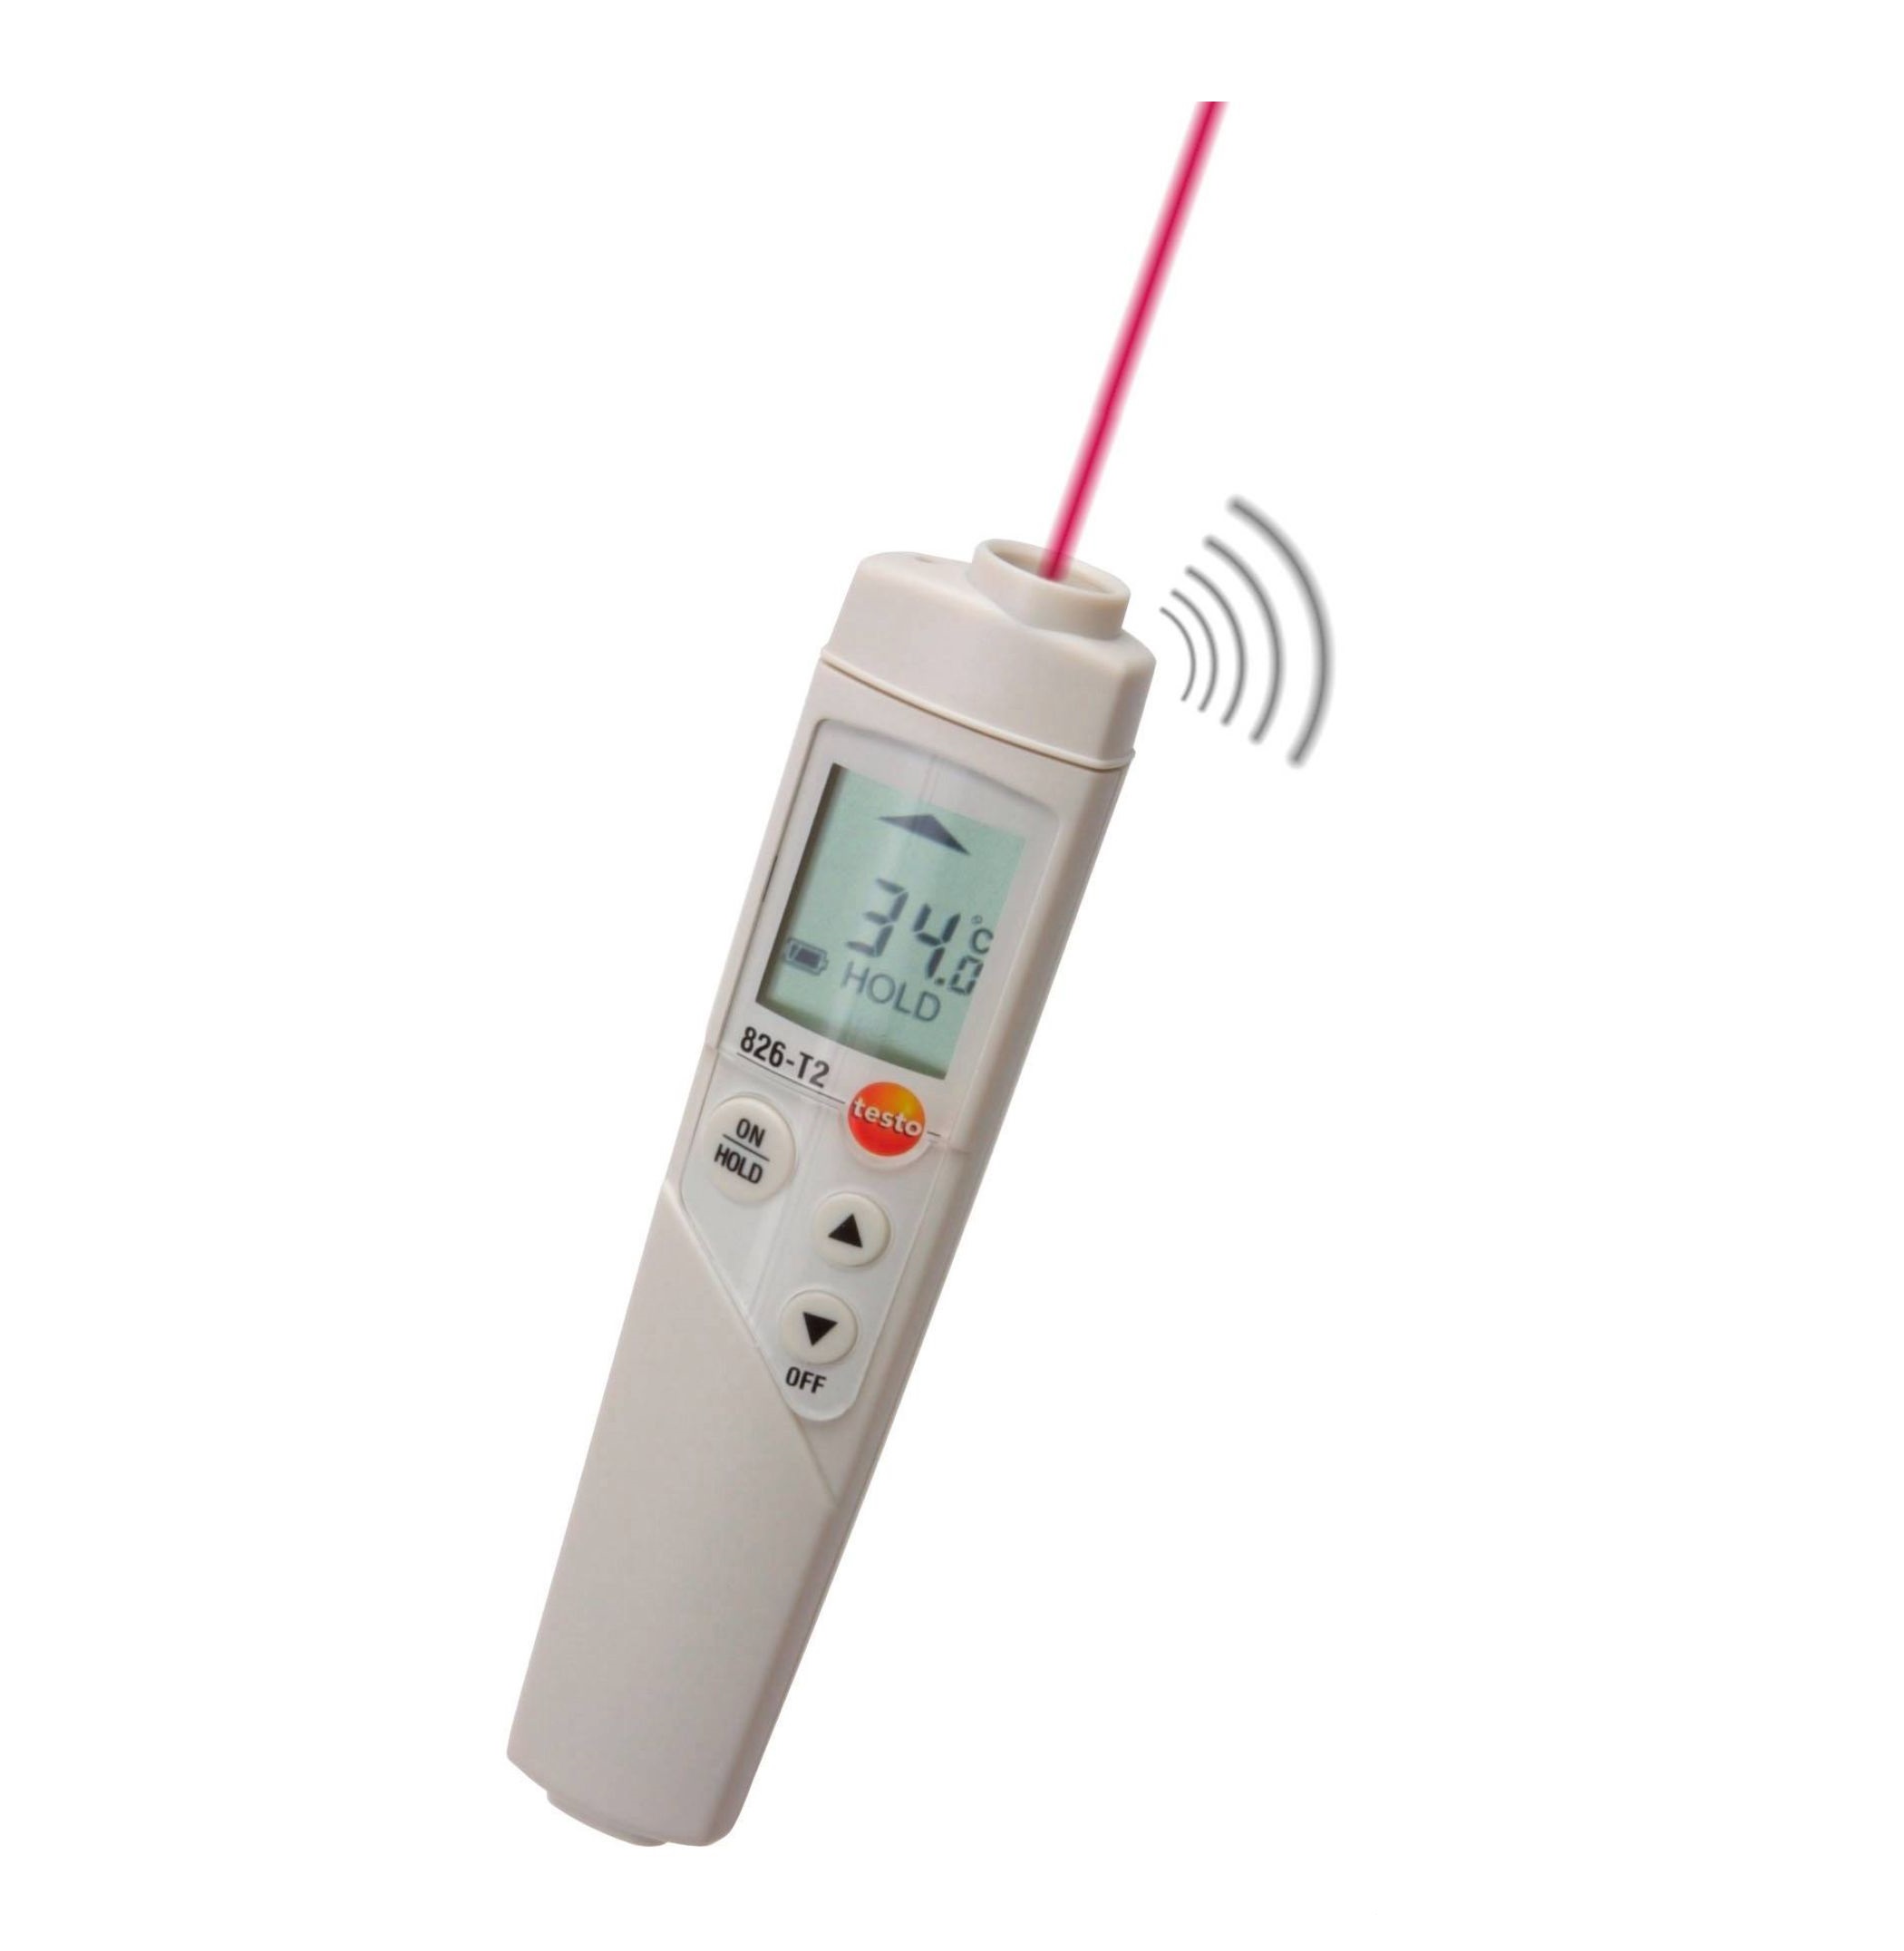 Máy đo nhiệt độ hồng ngoại lấy dấu bằng laser cho thực phẩm Testo 826-T2 (-50 tới +300 °C)